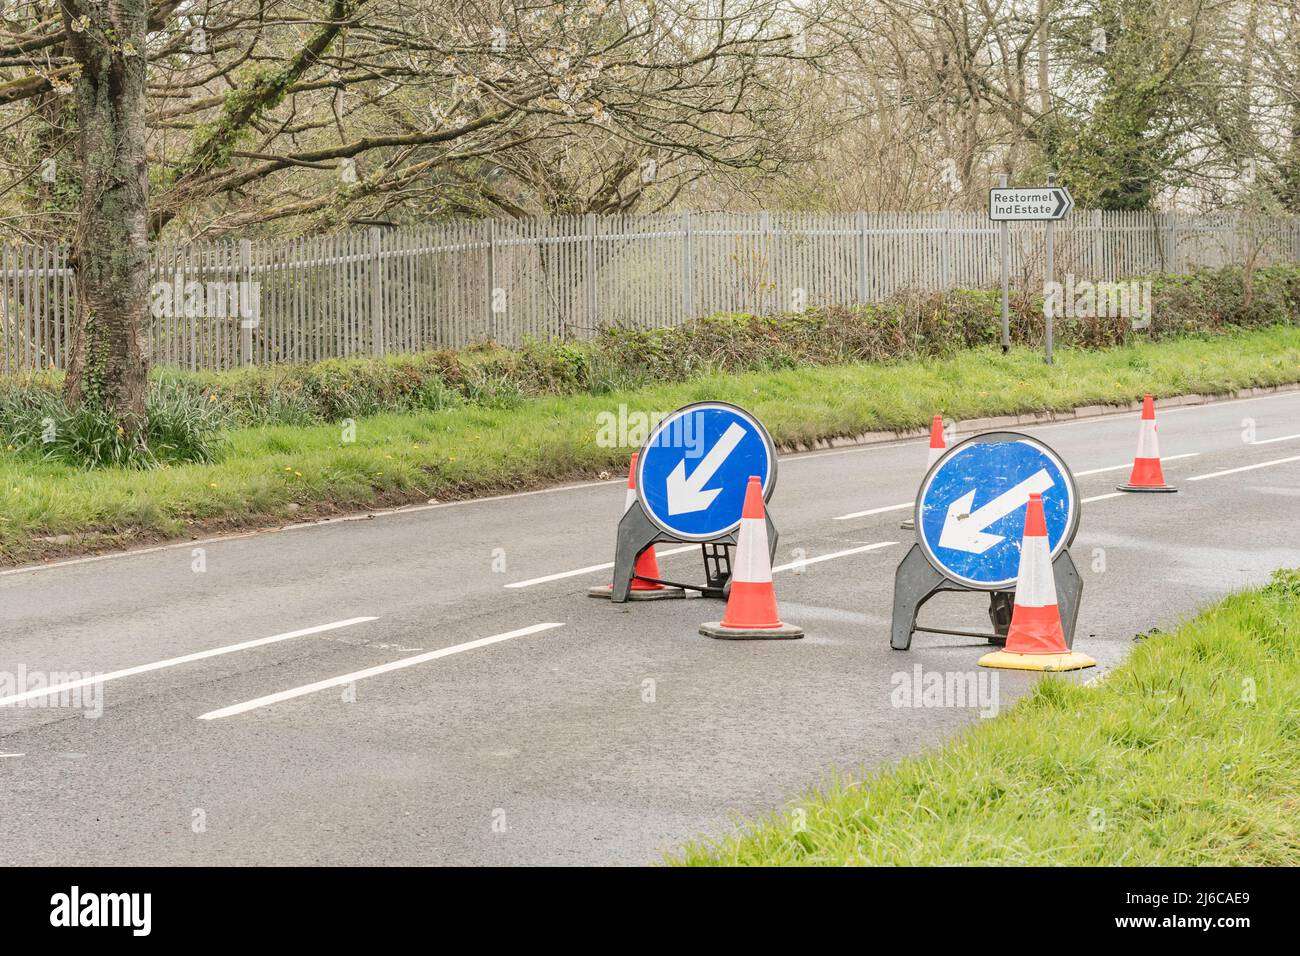 Siga las señales azules de la izquierda en el Reino Unido, como parte de la señalización de obras en una carretera de Cornwall. Para reparaciones o mantenimiento de carreteras, el tráfico se ralenti. Foto de stock